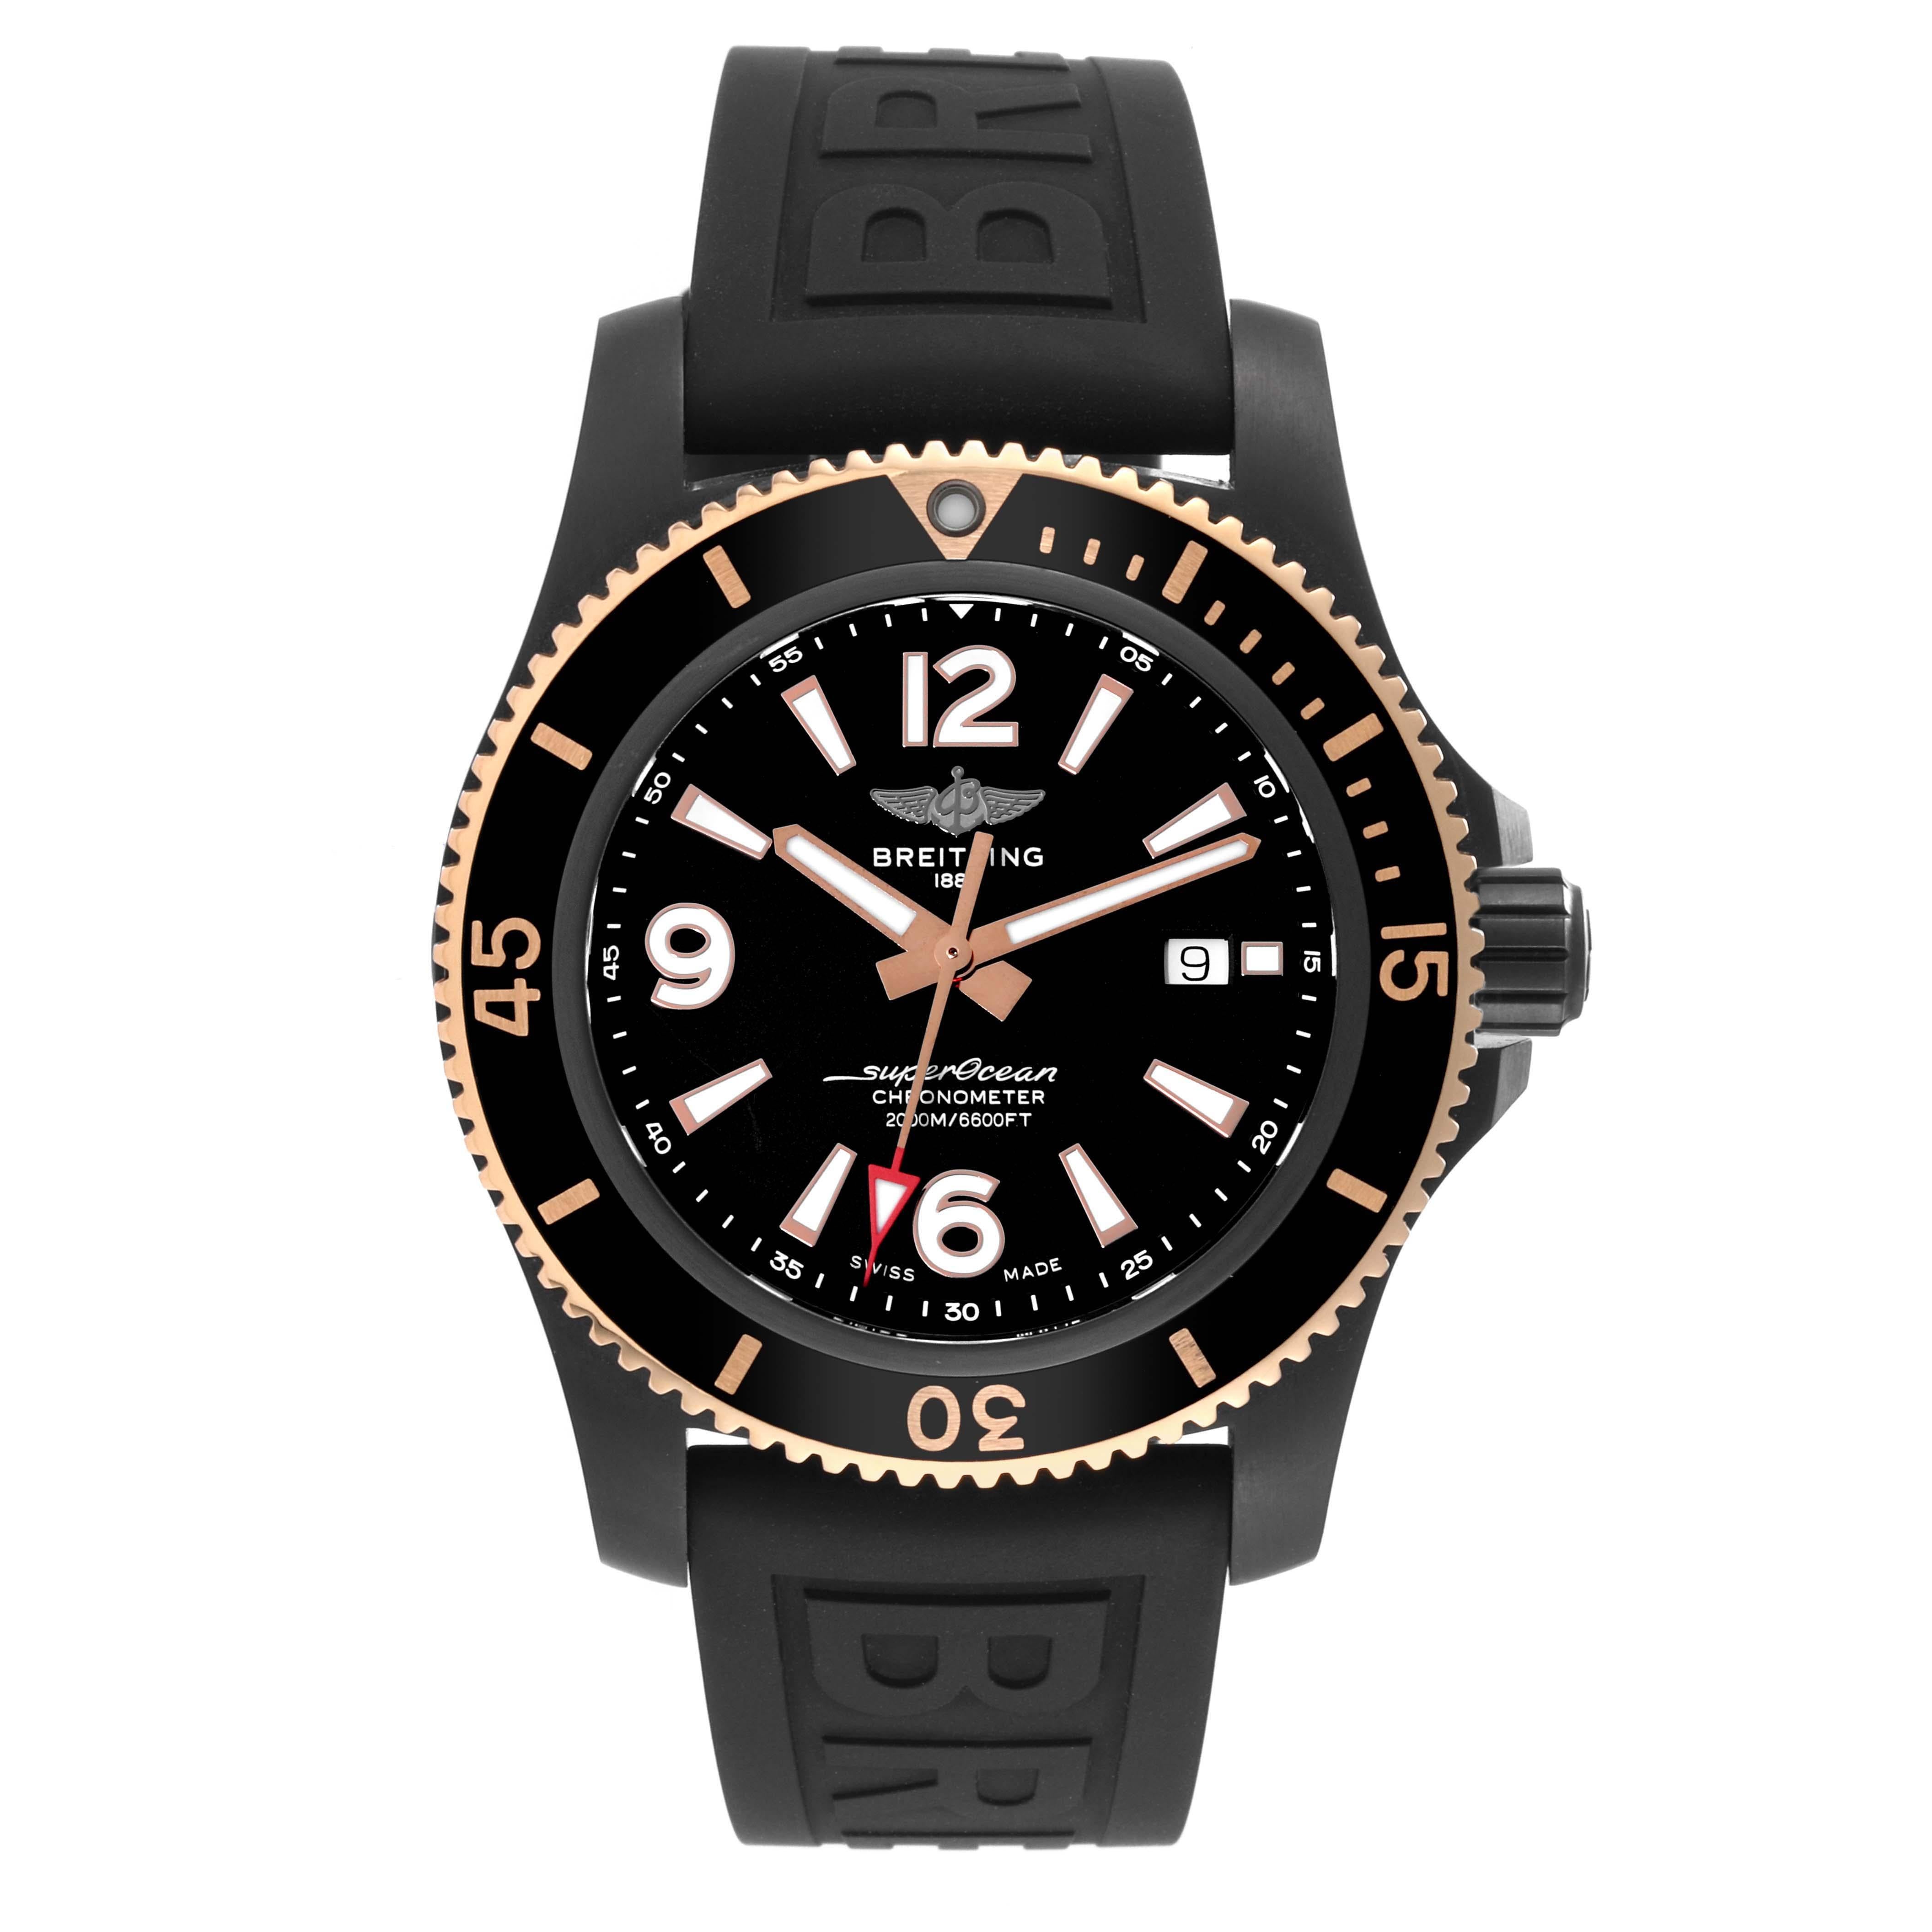 Breitling Superocean II Schwarz Stahl Rose Gold Herrenuhr U17368 Ungetragen. Automatisches Uhrwerk mit Selbstaufzug. Schwarzes Stahlgehäuse mit einem Durchmesser von 46.0 mm. Verschraubte Krone aus schwarzem Stahl. Einseitig drehbare Lünette aus